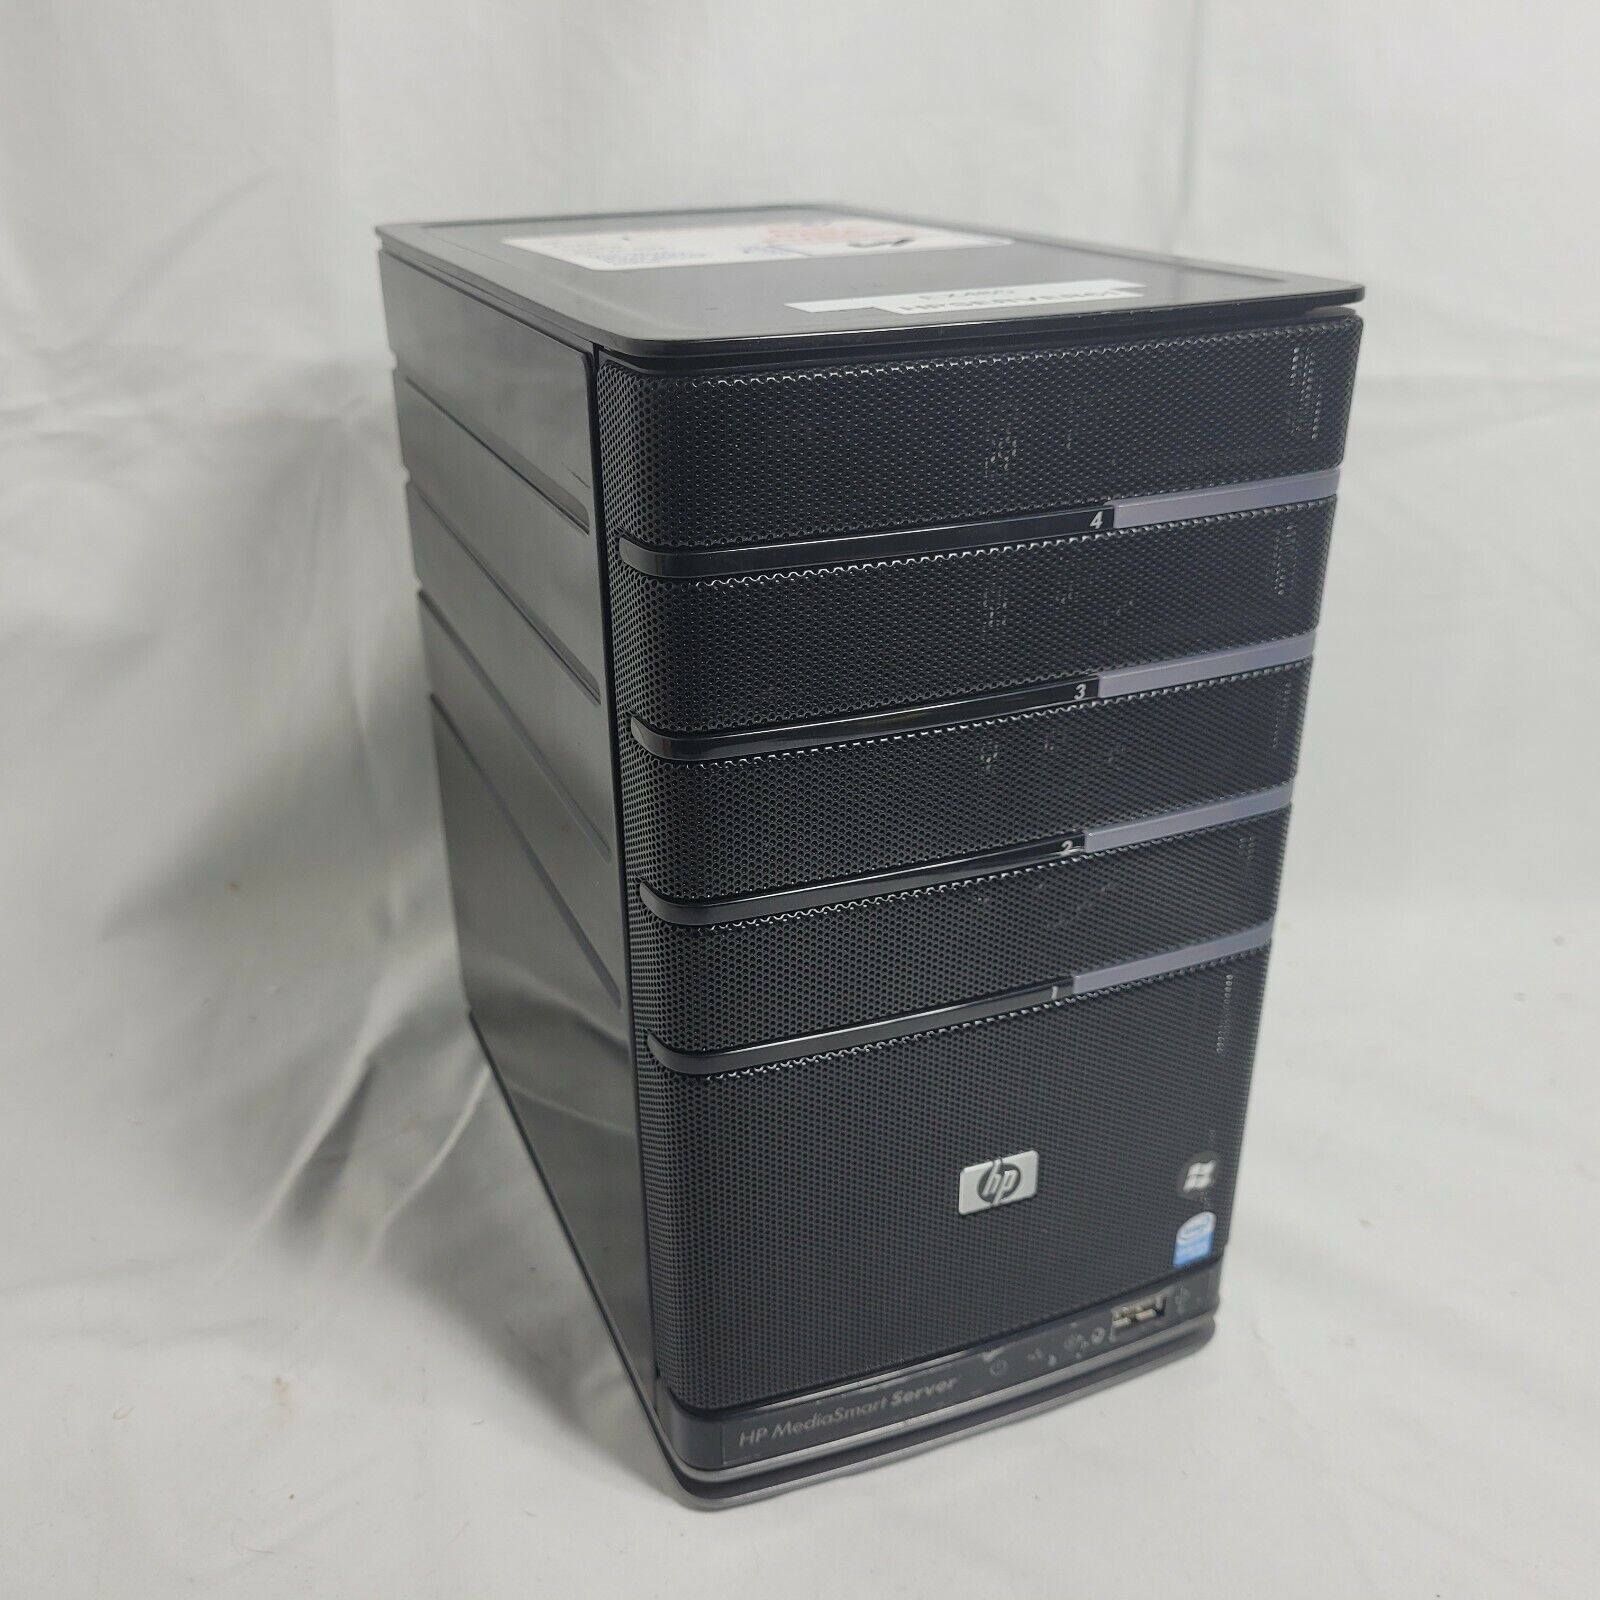 HP MediaSmart Server EX485 w/ 3TB Total Hardrive Hard Drive All Data Purged